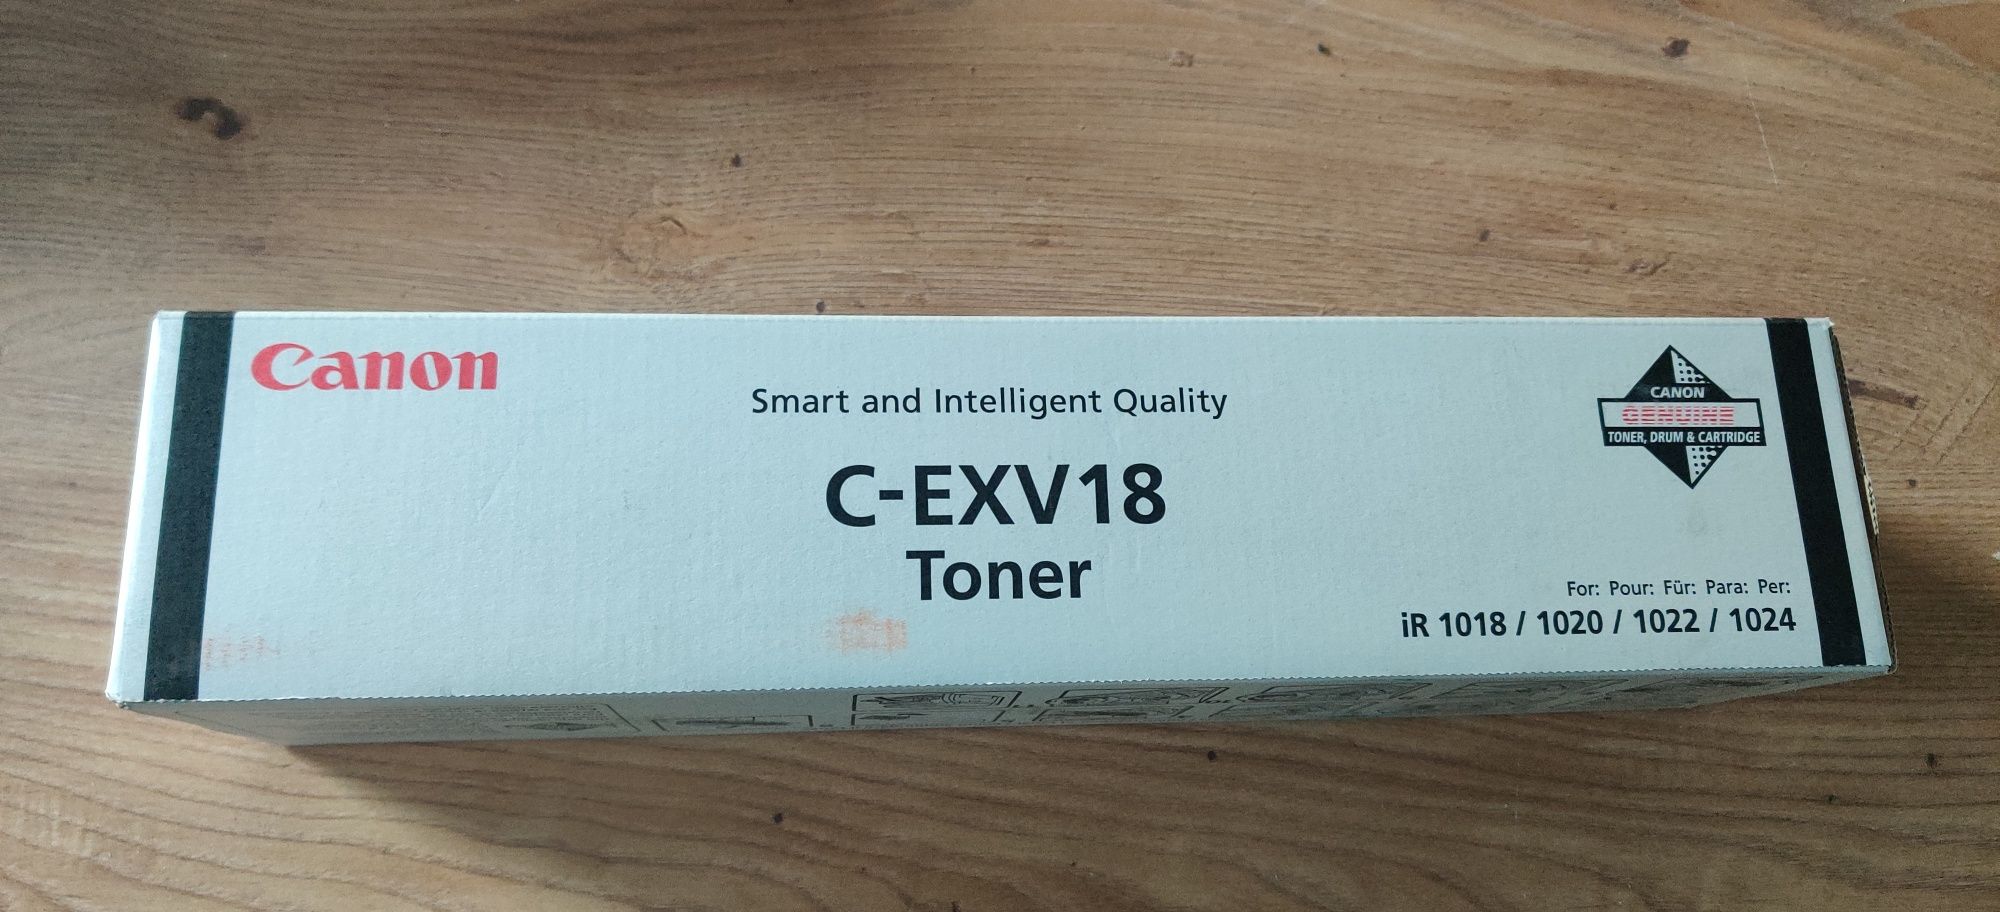 Canon C-EXV18 toner oryginalny 0386B002